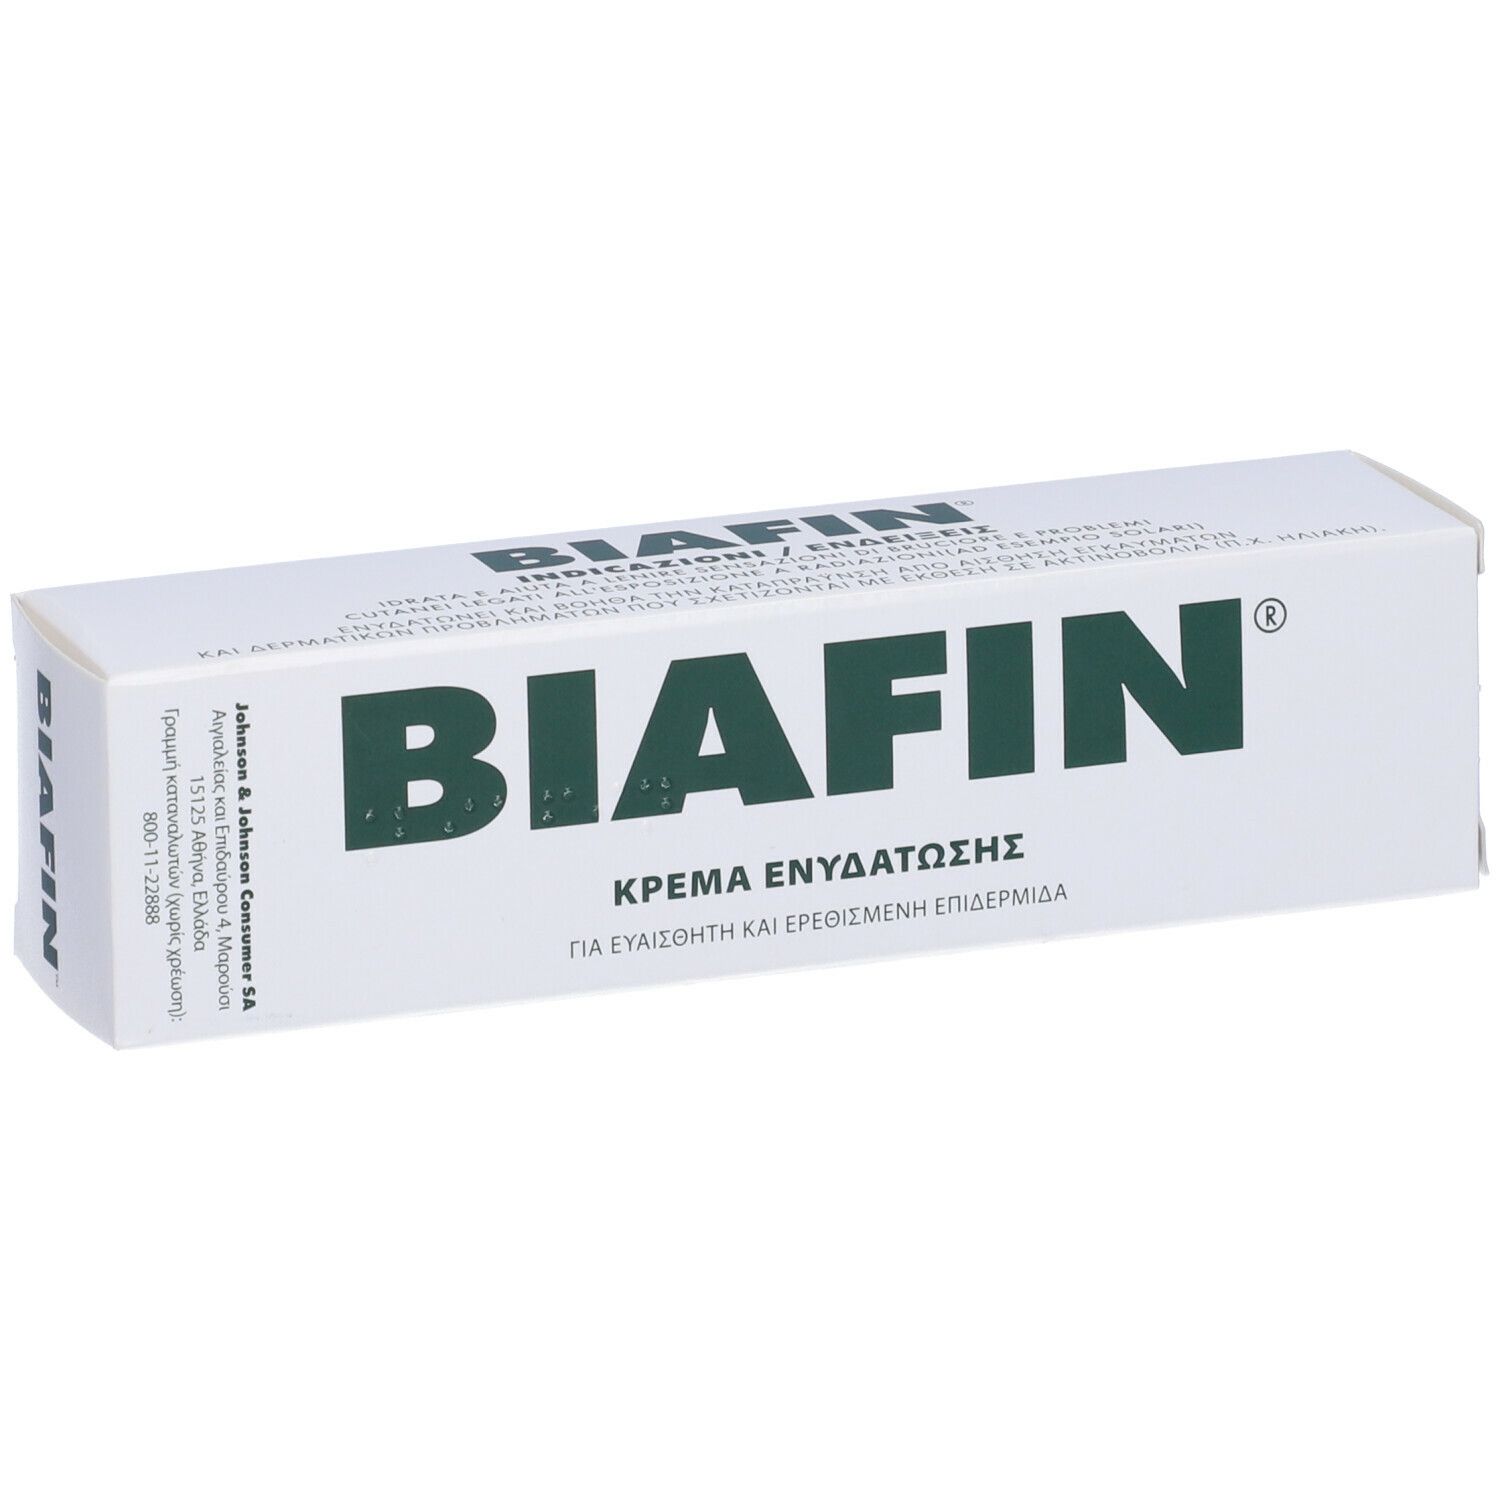 Biafin® Emulsione Cutanea